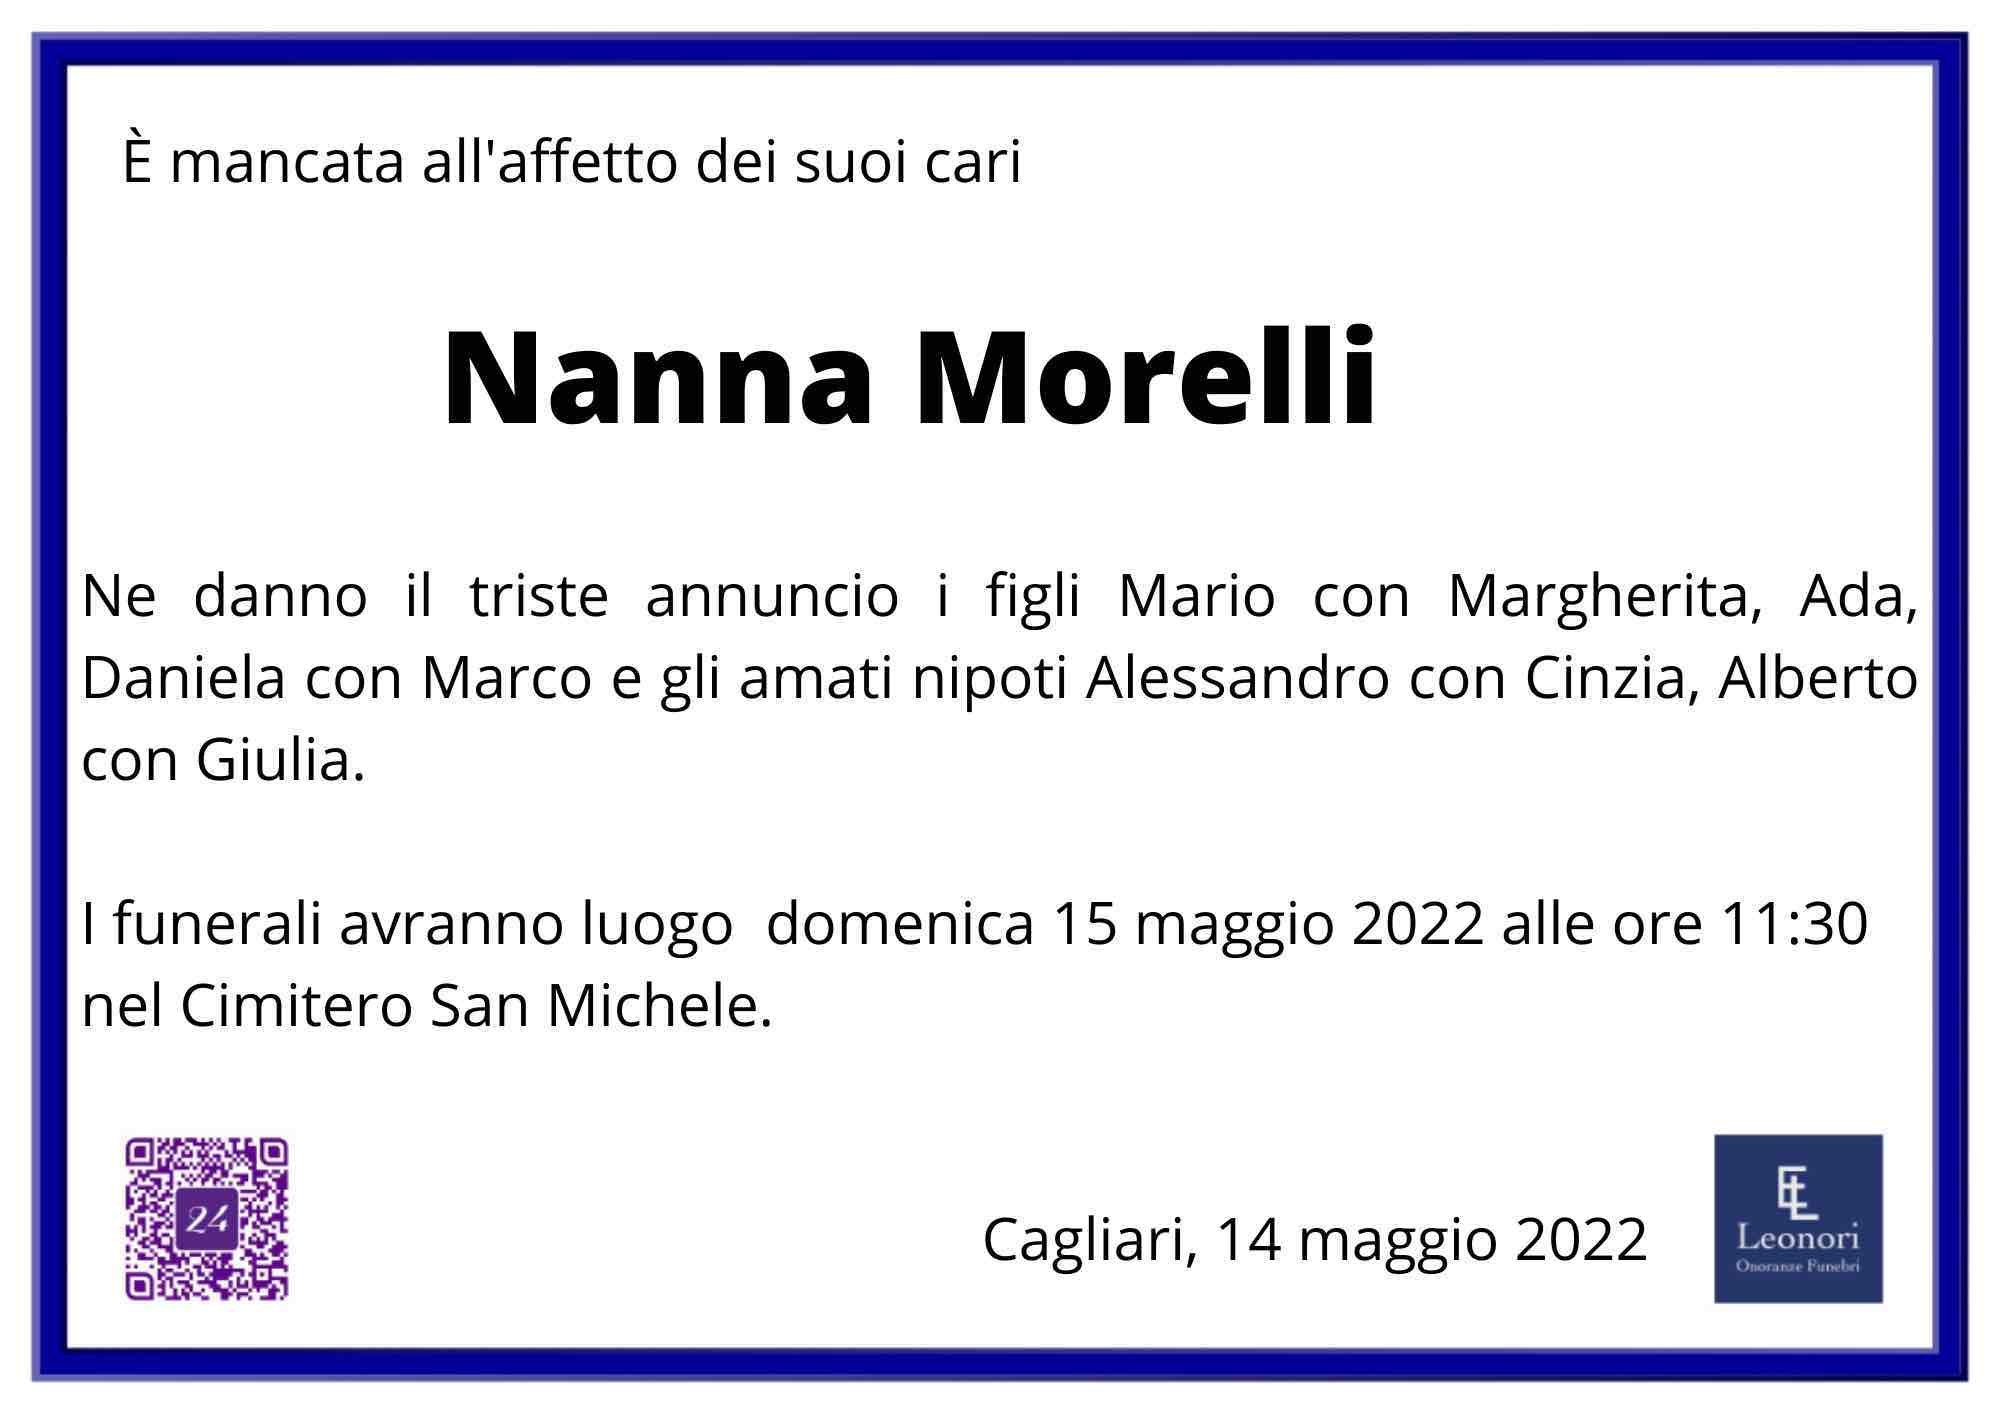 Nanna Morelli